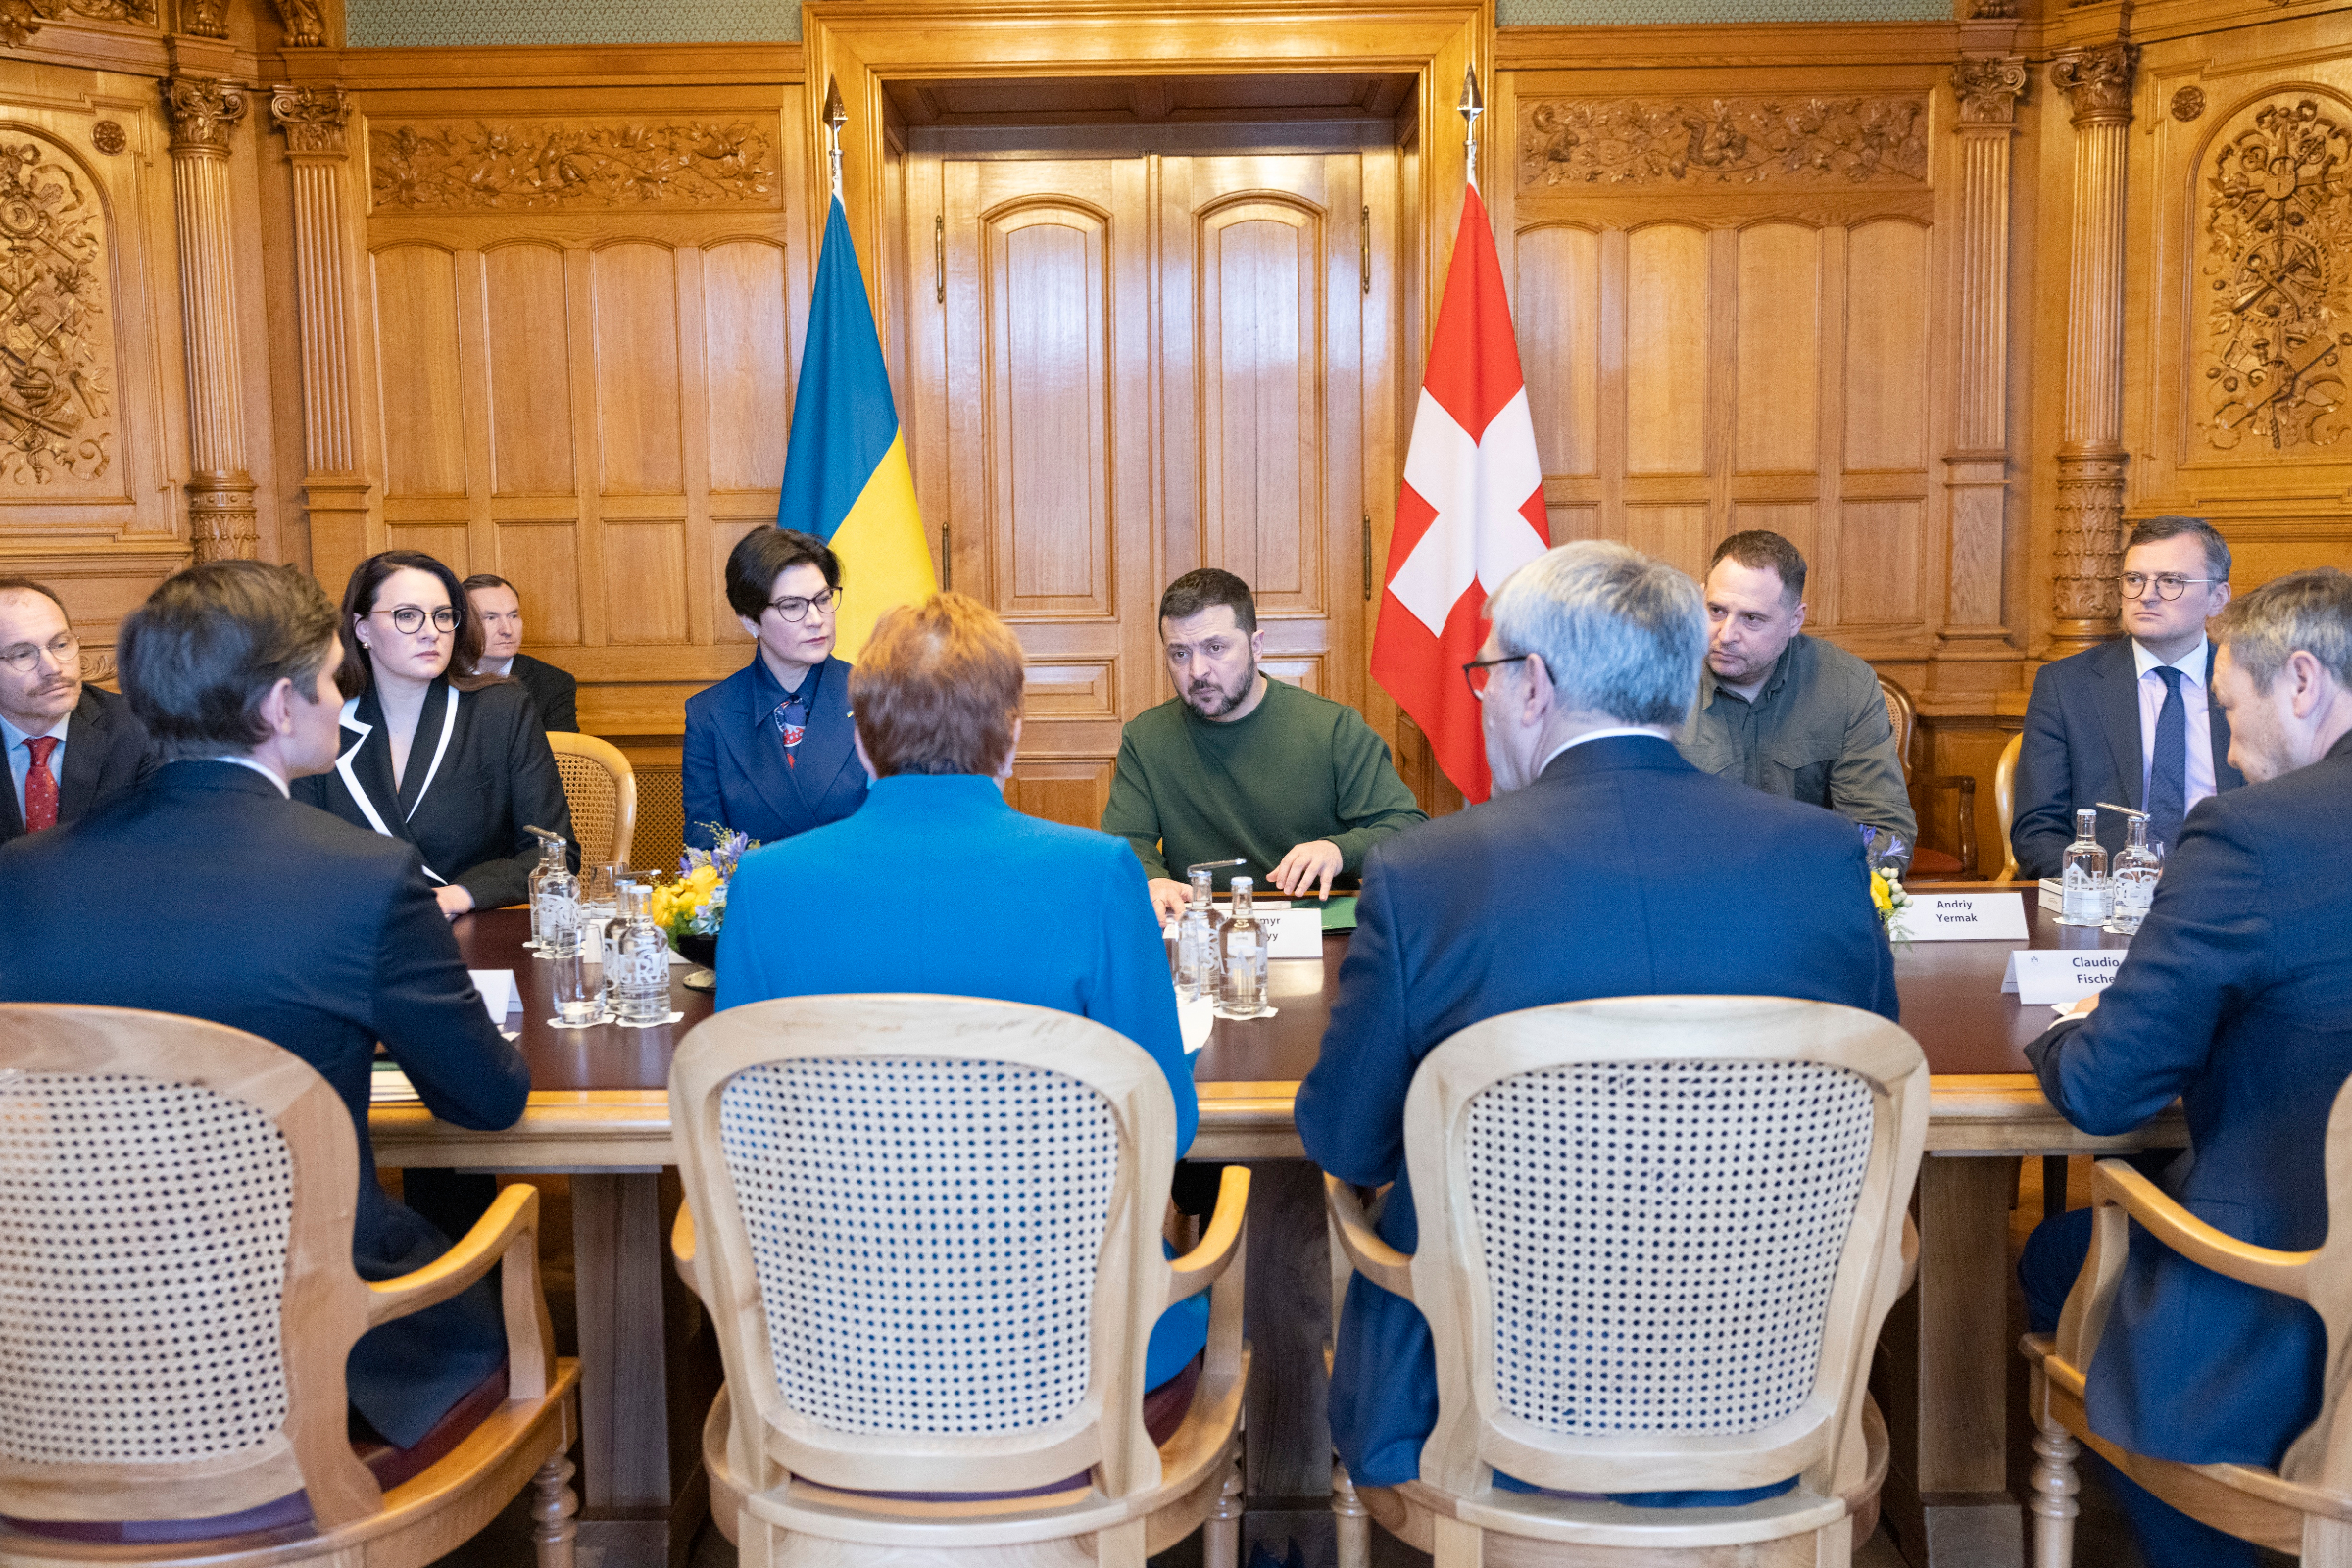 Davantage de moyens pour l'Ukraine : Le Centre doit maintenant joindre le geste à la parole